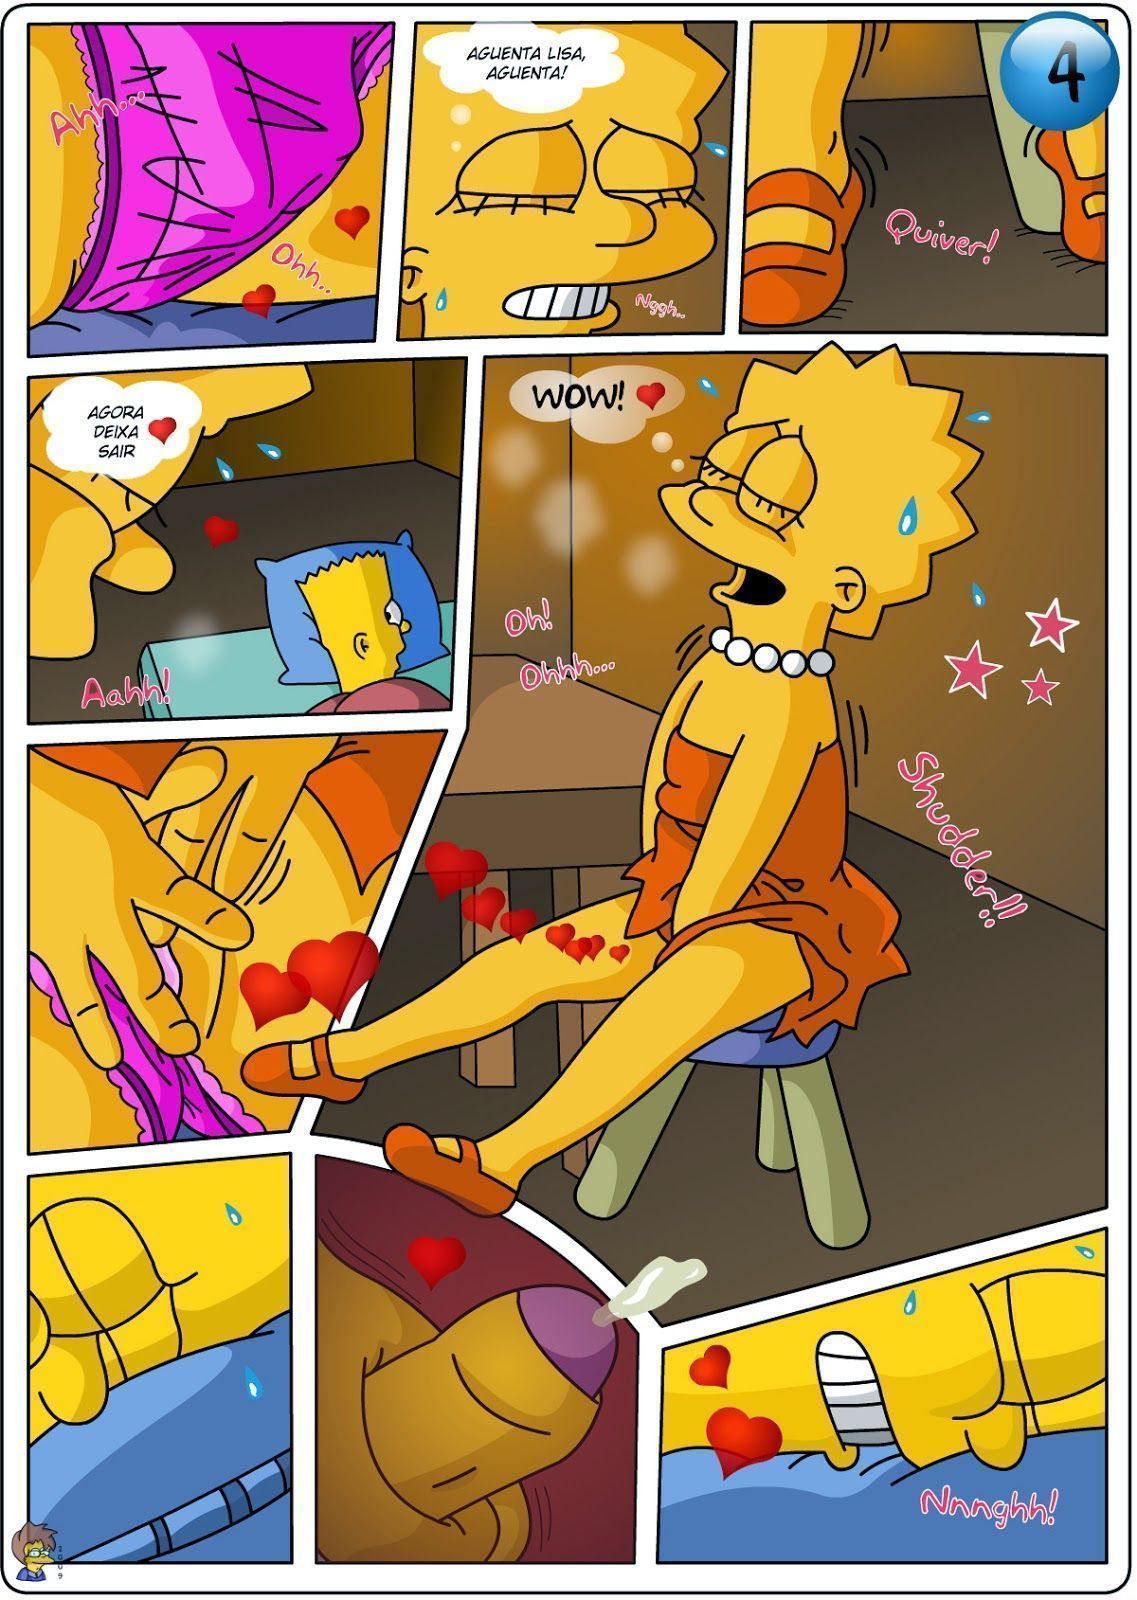 Os Simpsons a casa da árvore - Quadrinho Erotico